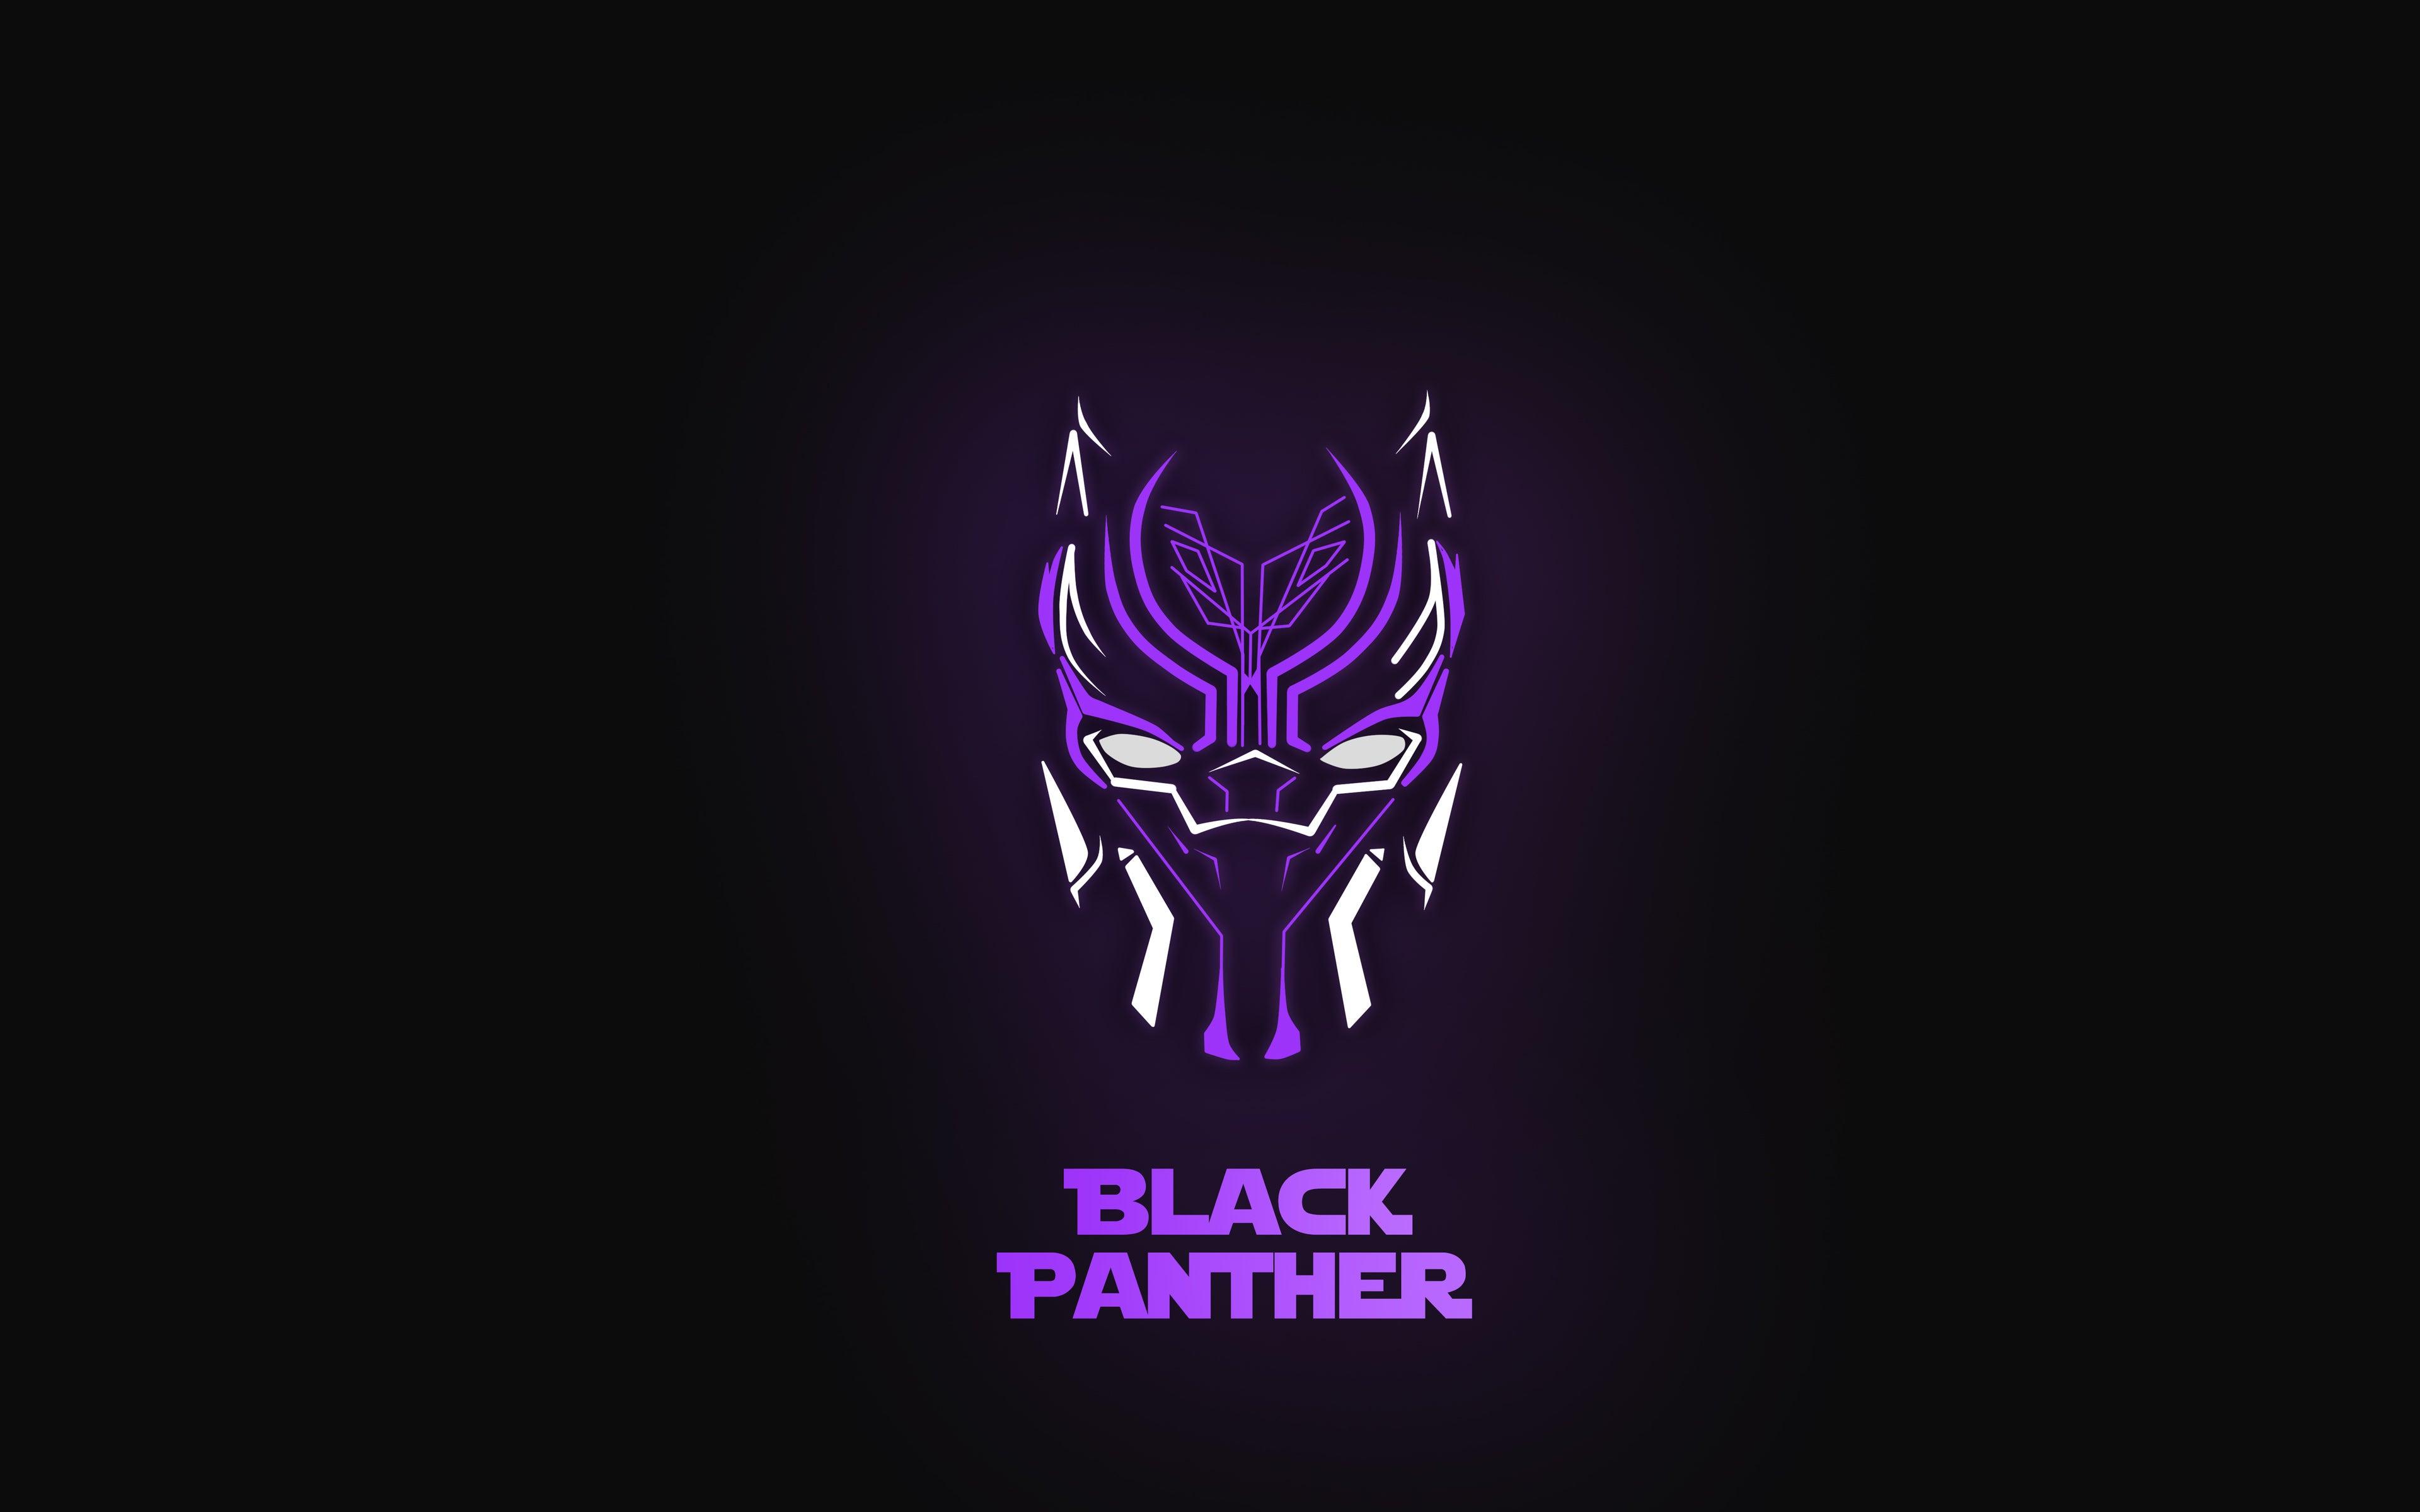 Black Panther 4K wallpaper